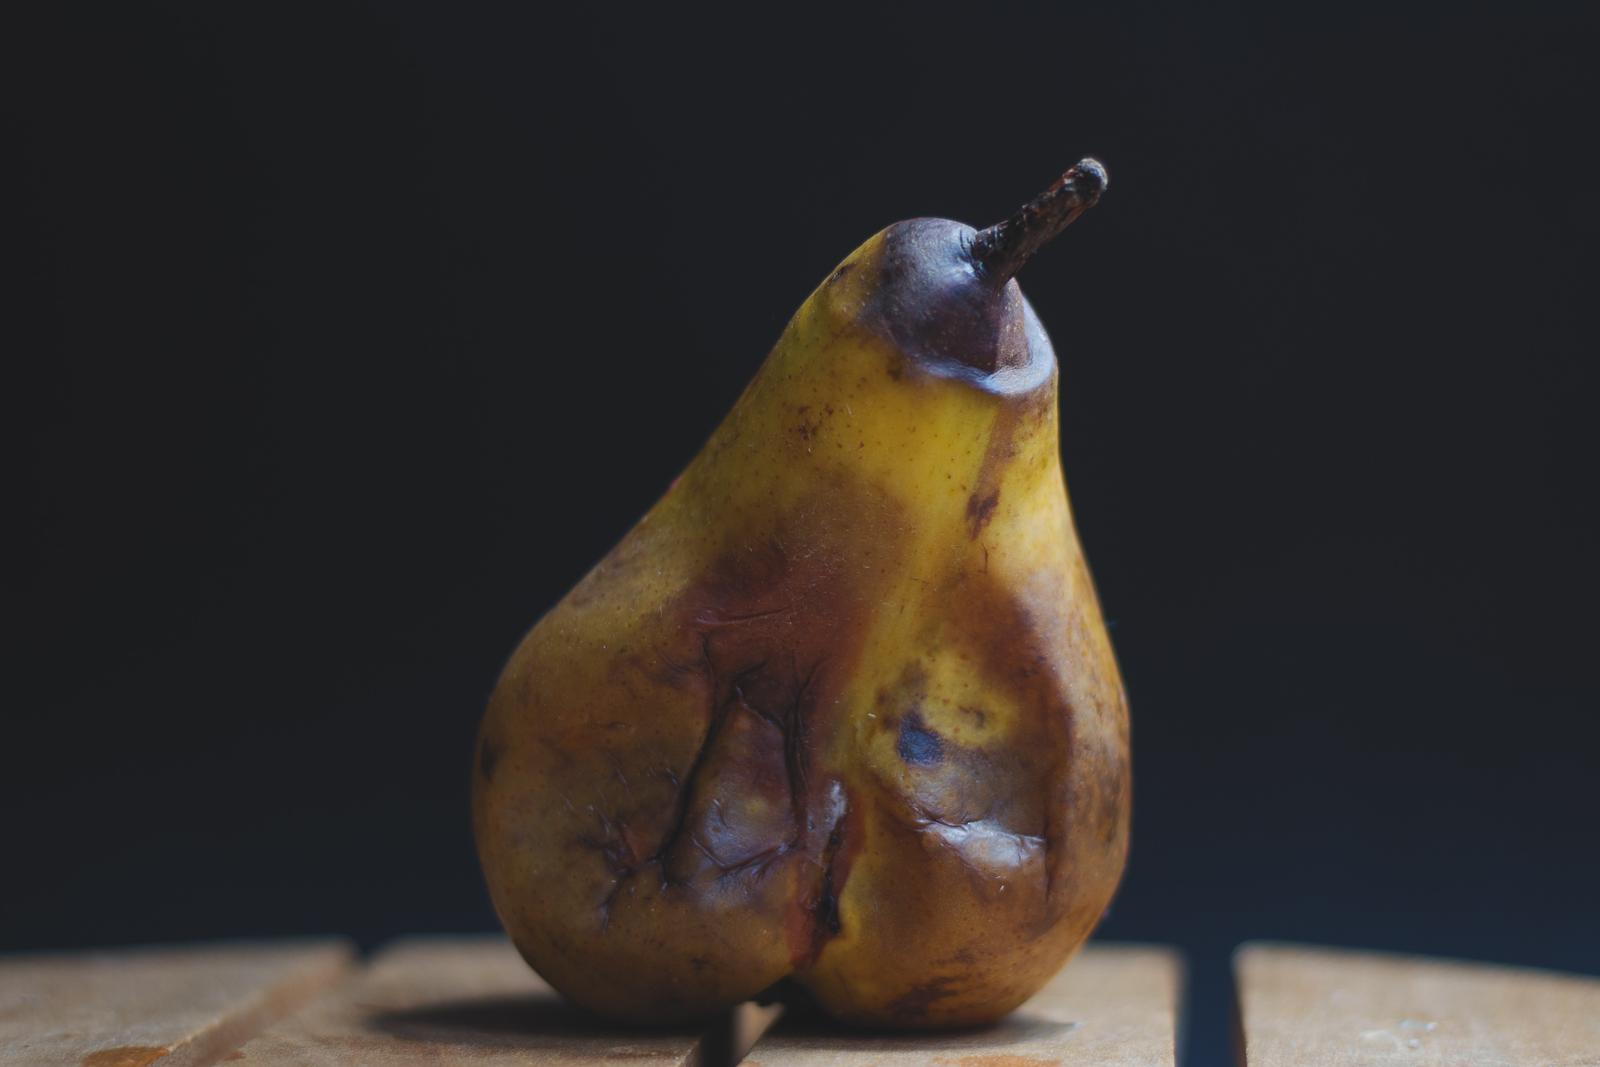 Rotten pear